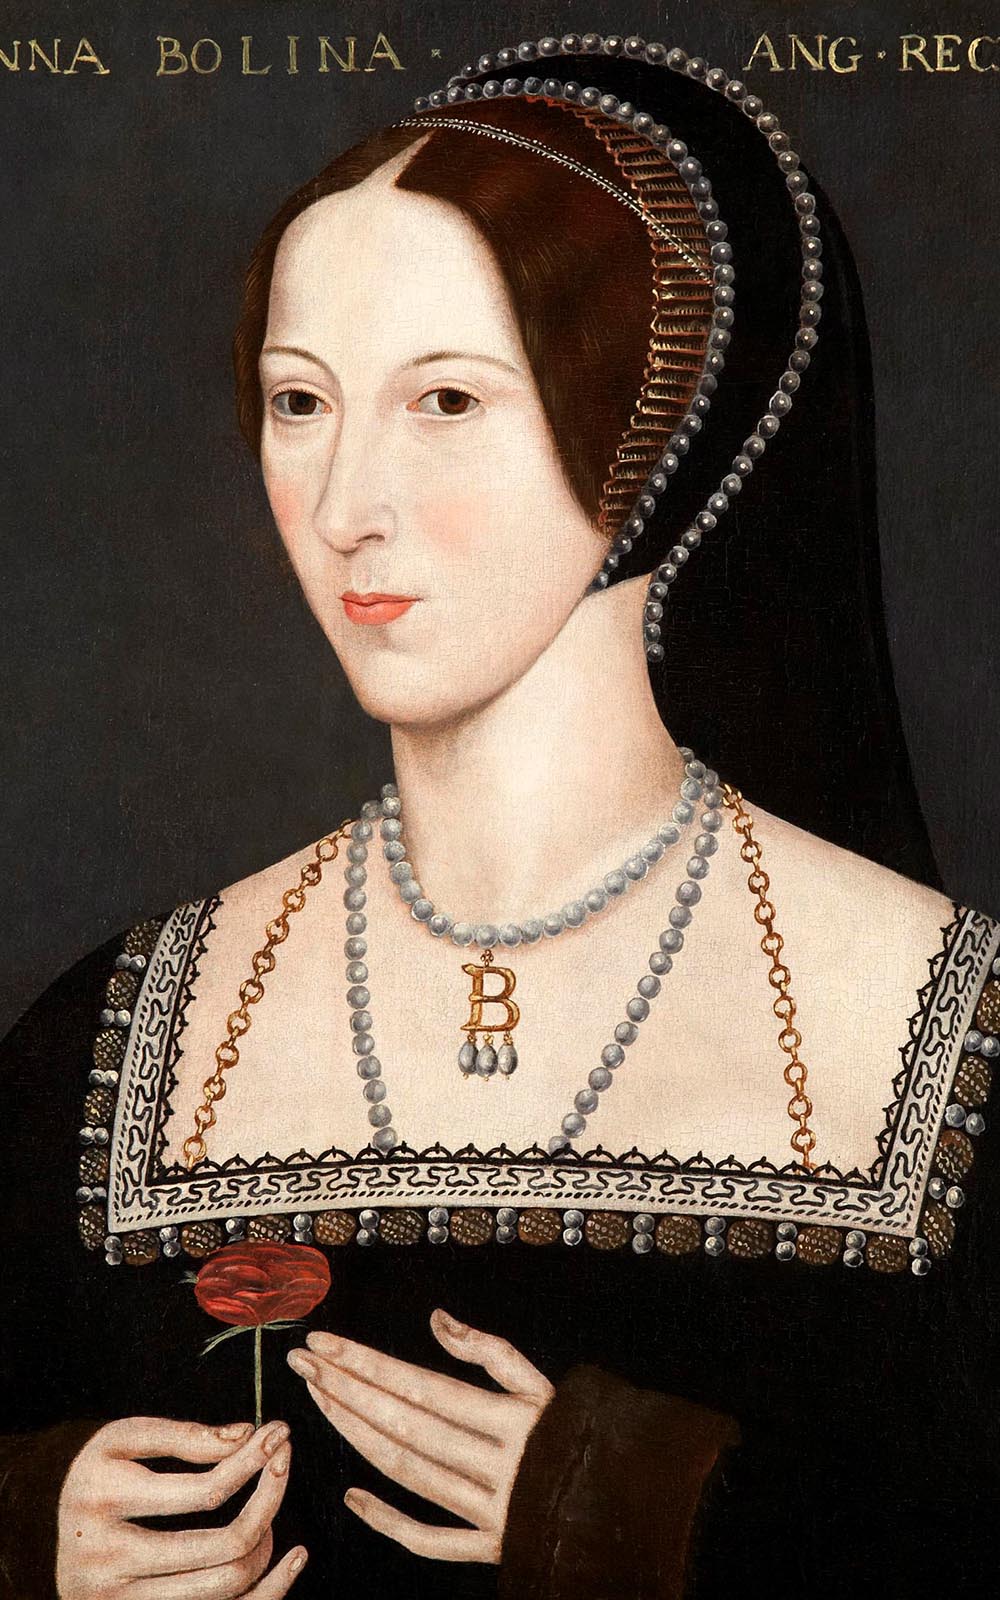 A portrait of Anne Boleyn